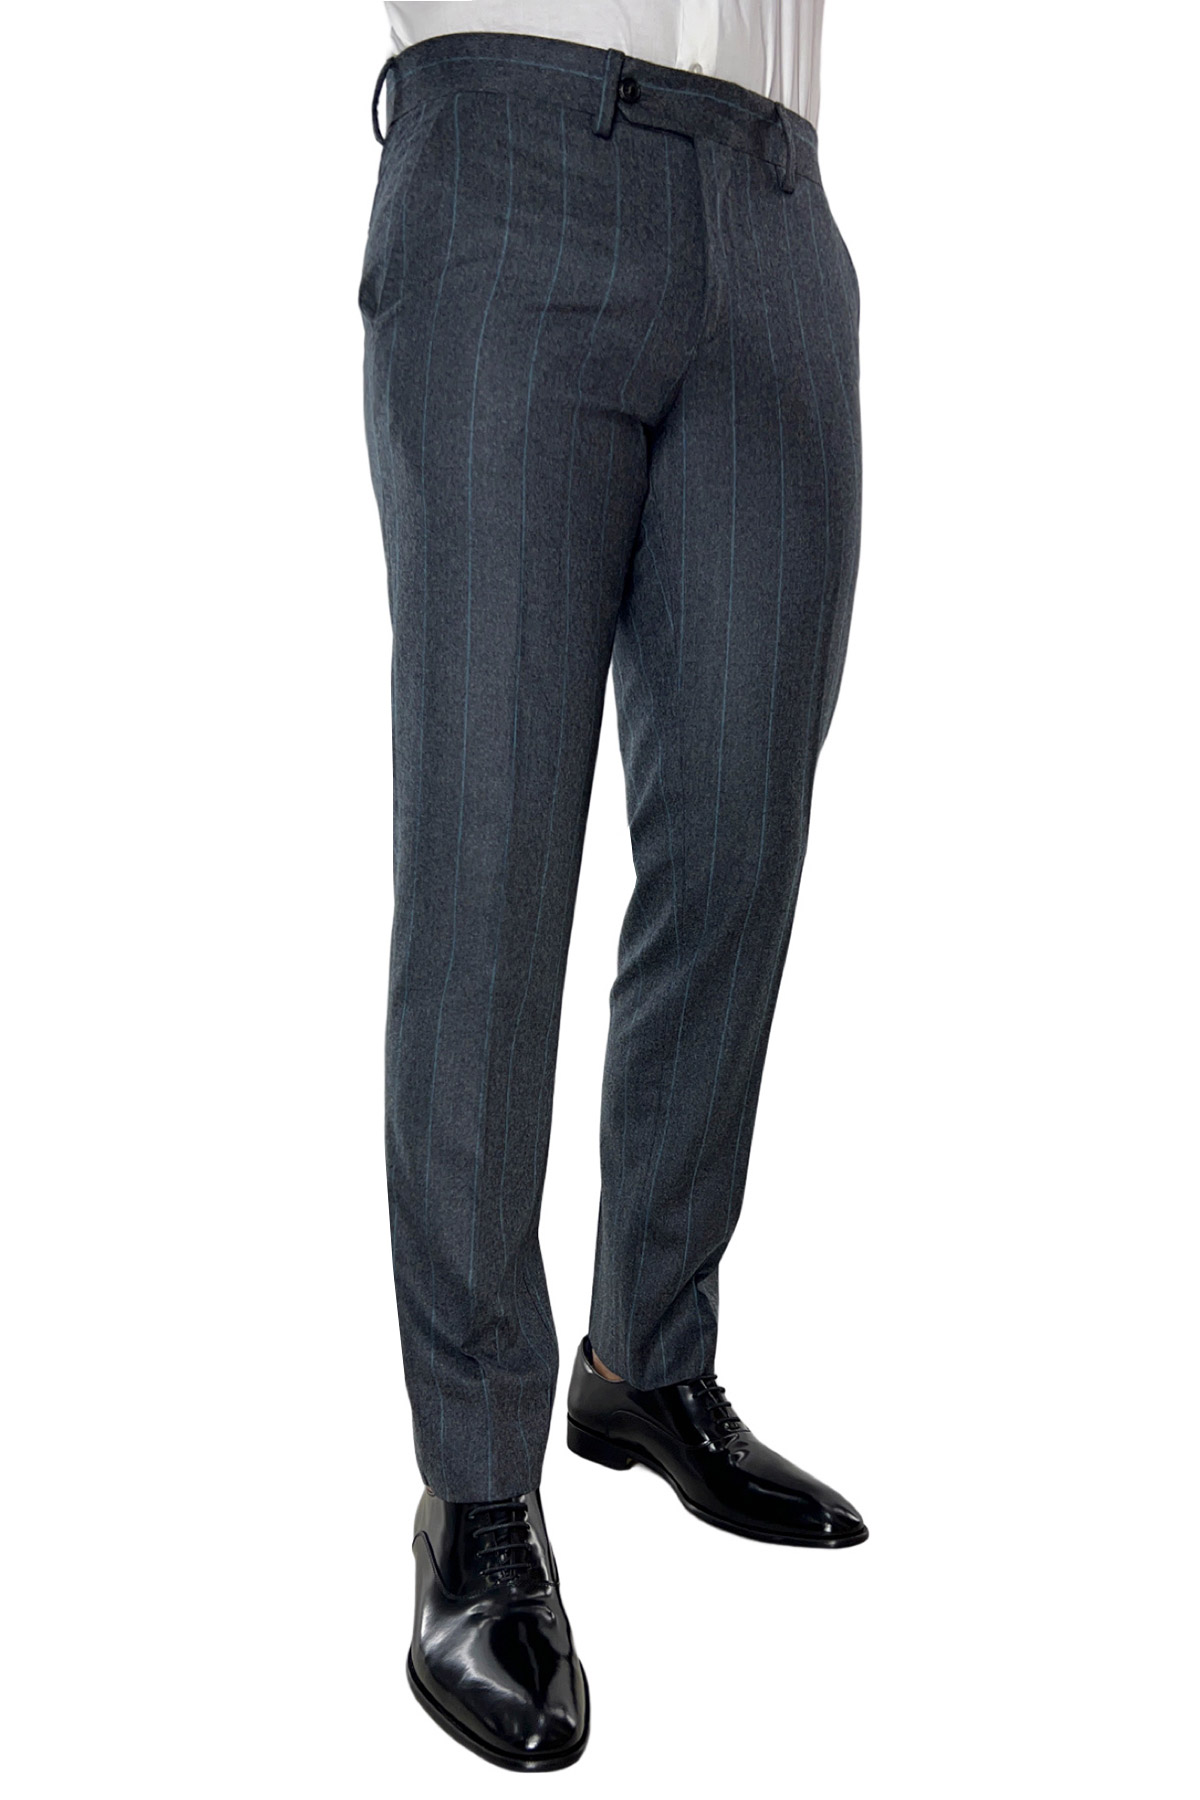 Pantalone uomo gessato grigio in lana 100% Vitale Barberis Canonico tasca america orlo a mano